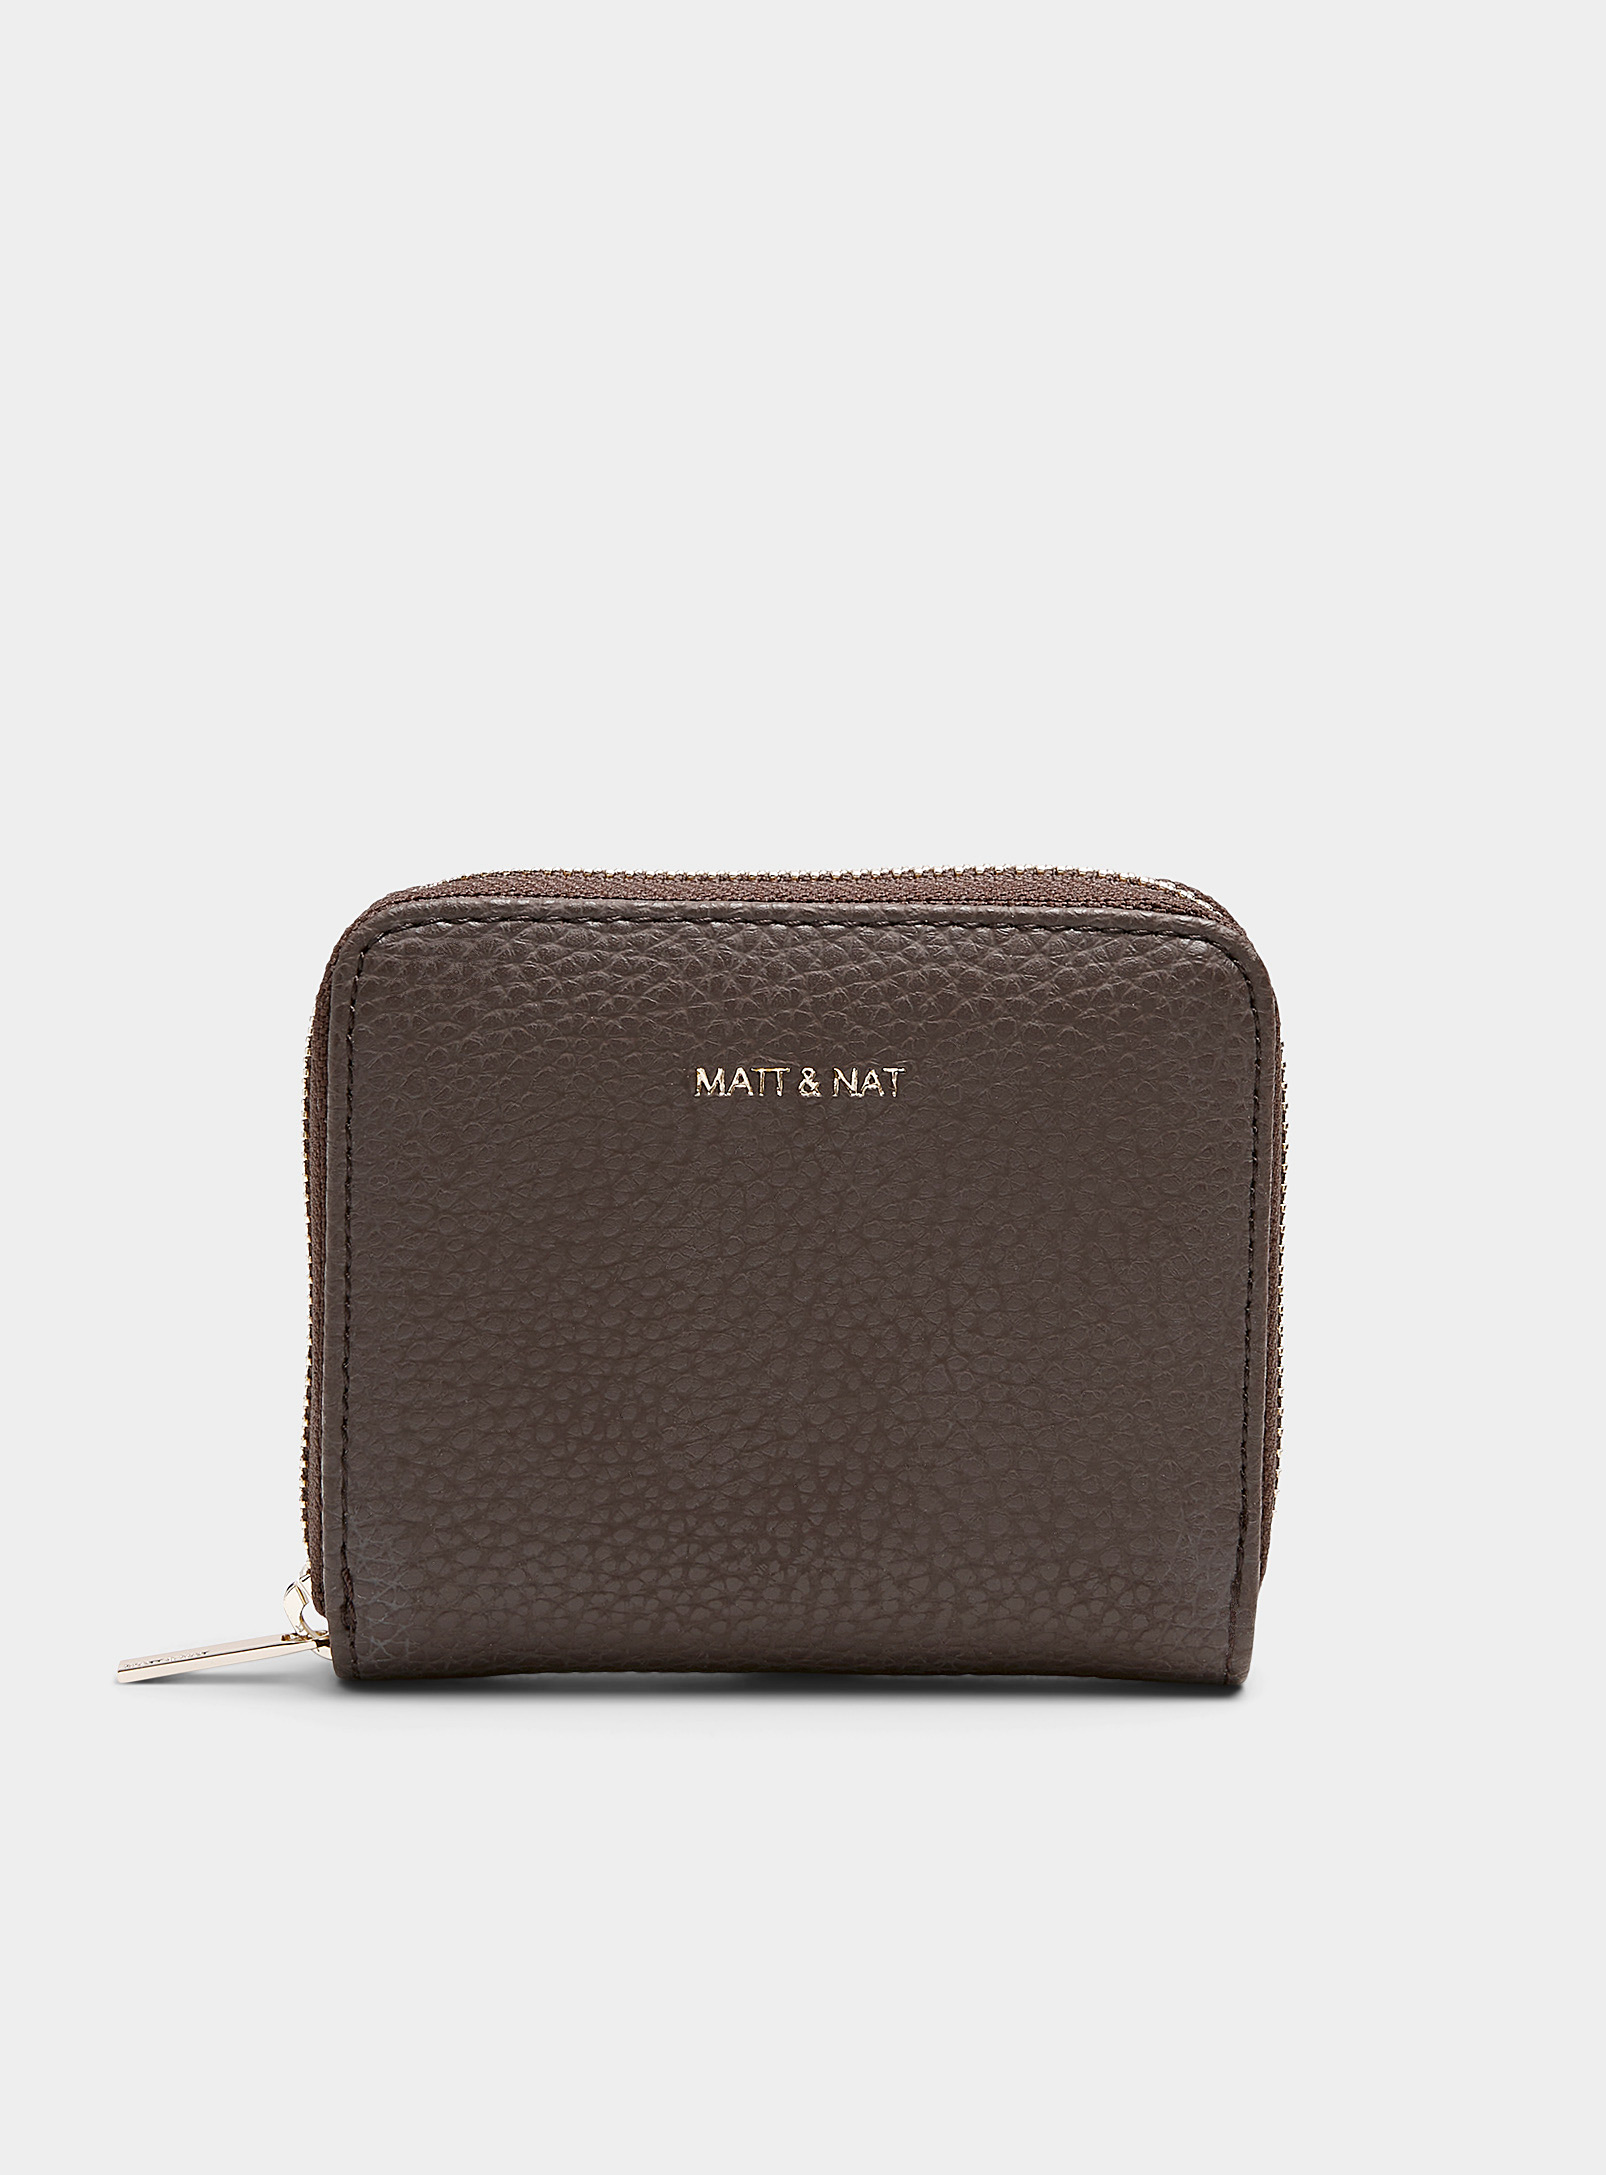 Matt & Nat Rue Mini Wallet In Medium Brown